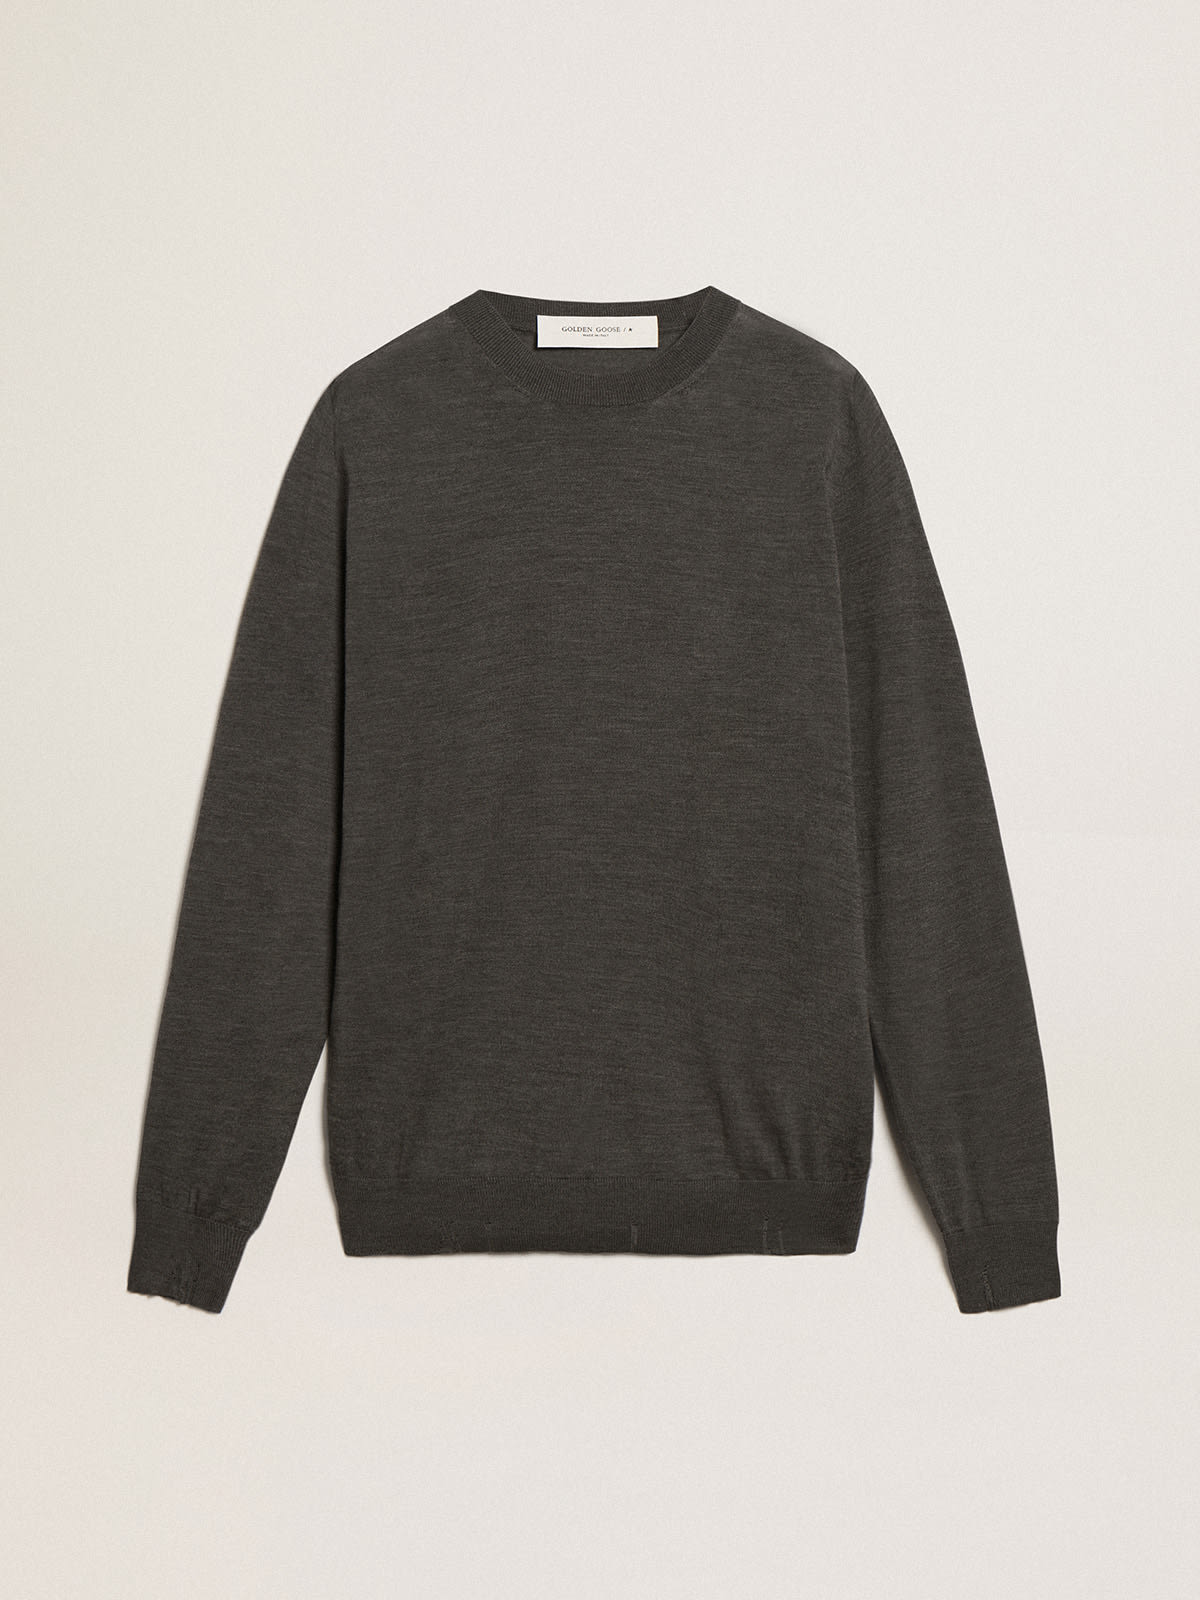 Golden Goose - Men's round-neck sweater in dark gray mélange wool in 